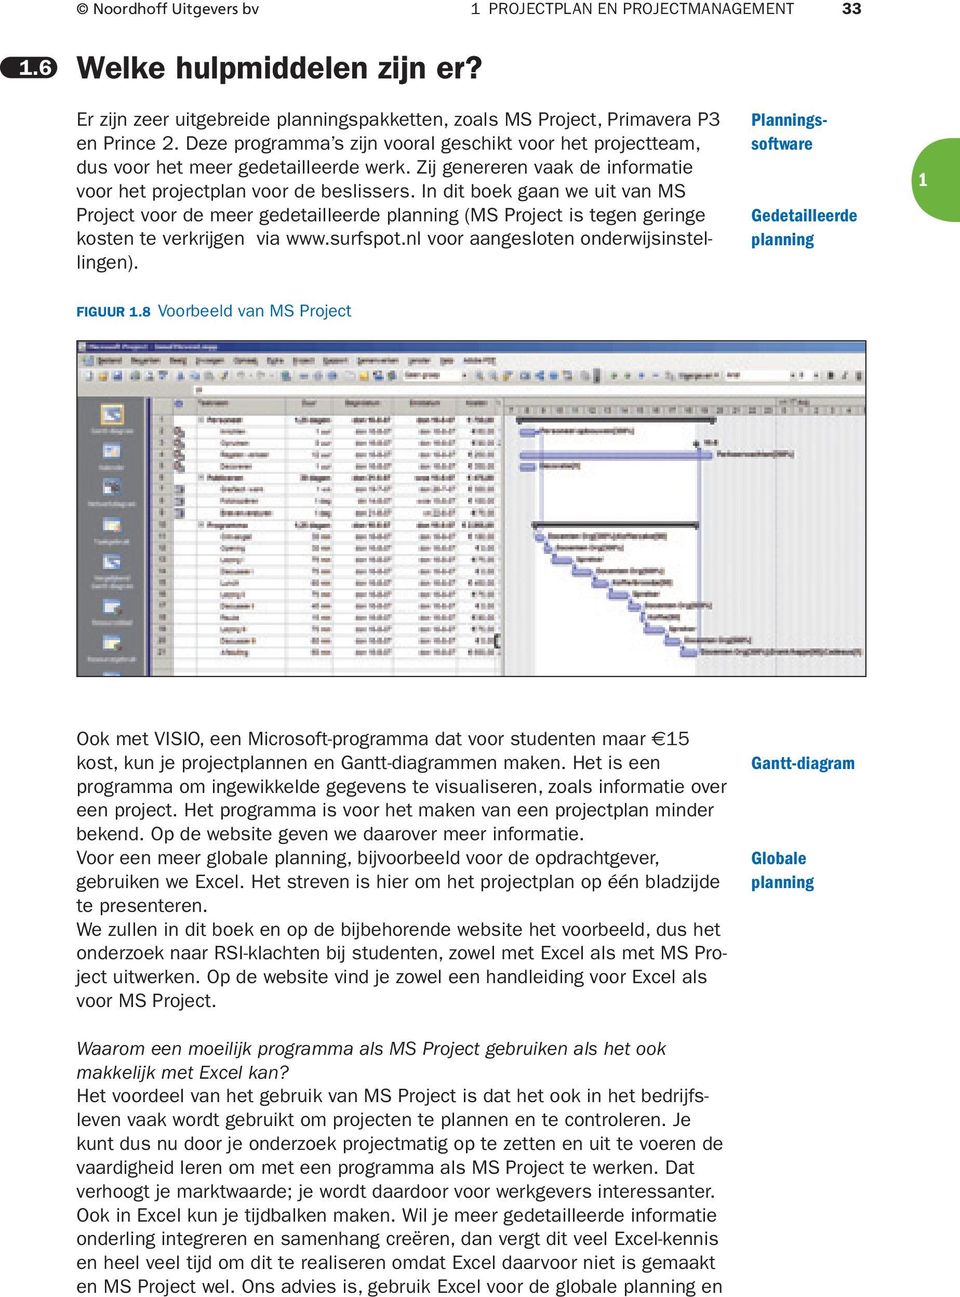 In dit boek gaan we uit van MS Project voor de meer gedetailleerde planning (MS Project is tegen geringe kosten te verkrijgen via www.surfspot.nl voor aangesloten onderwijsinstellingen).